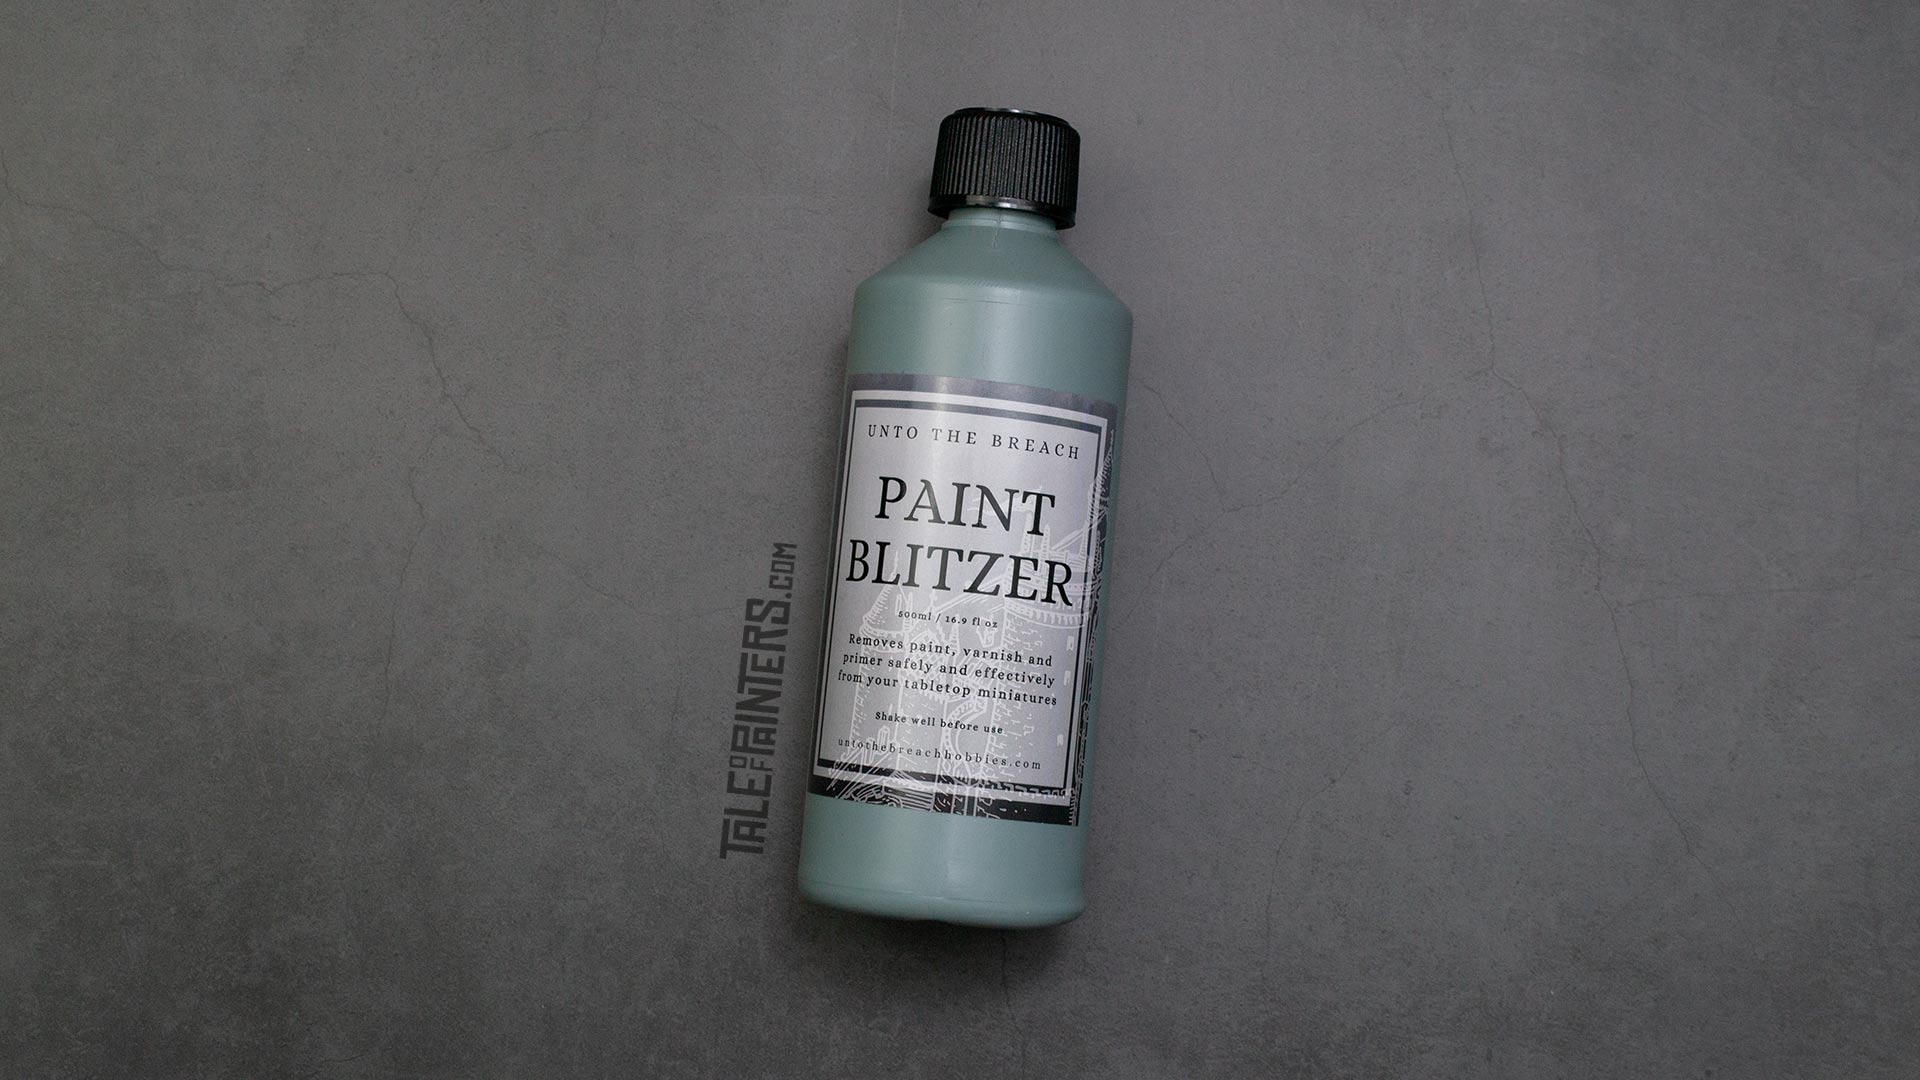 A bottle of Paint Blitzer paint stripper